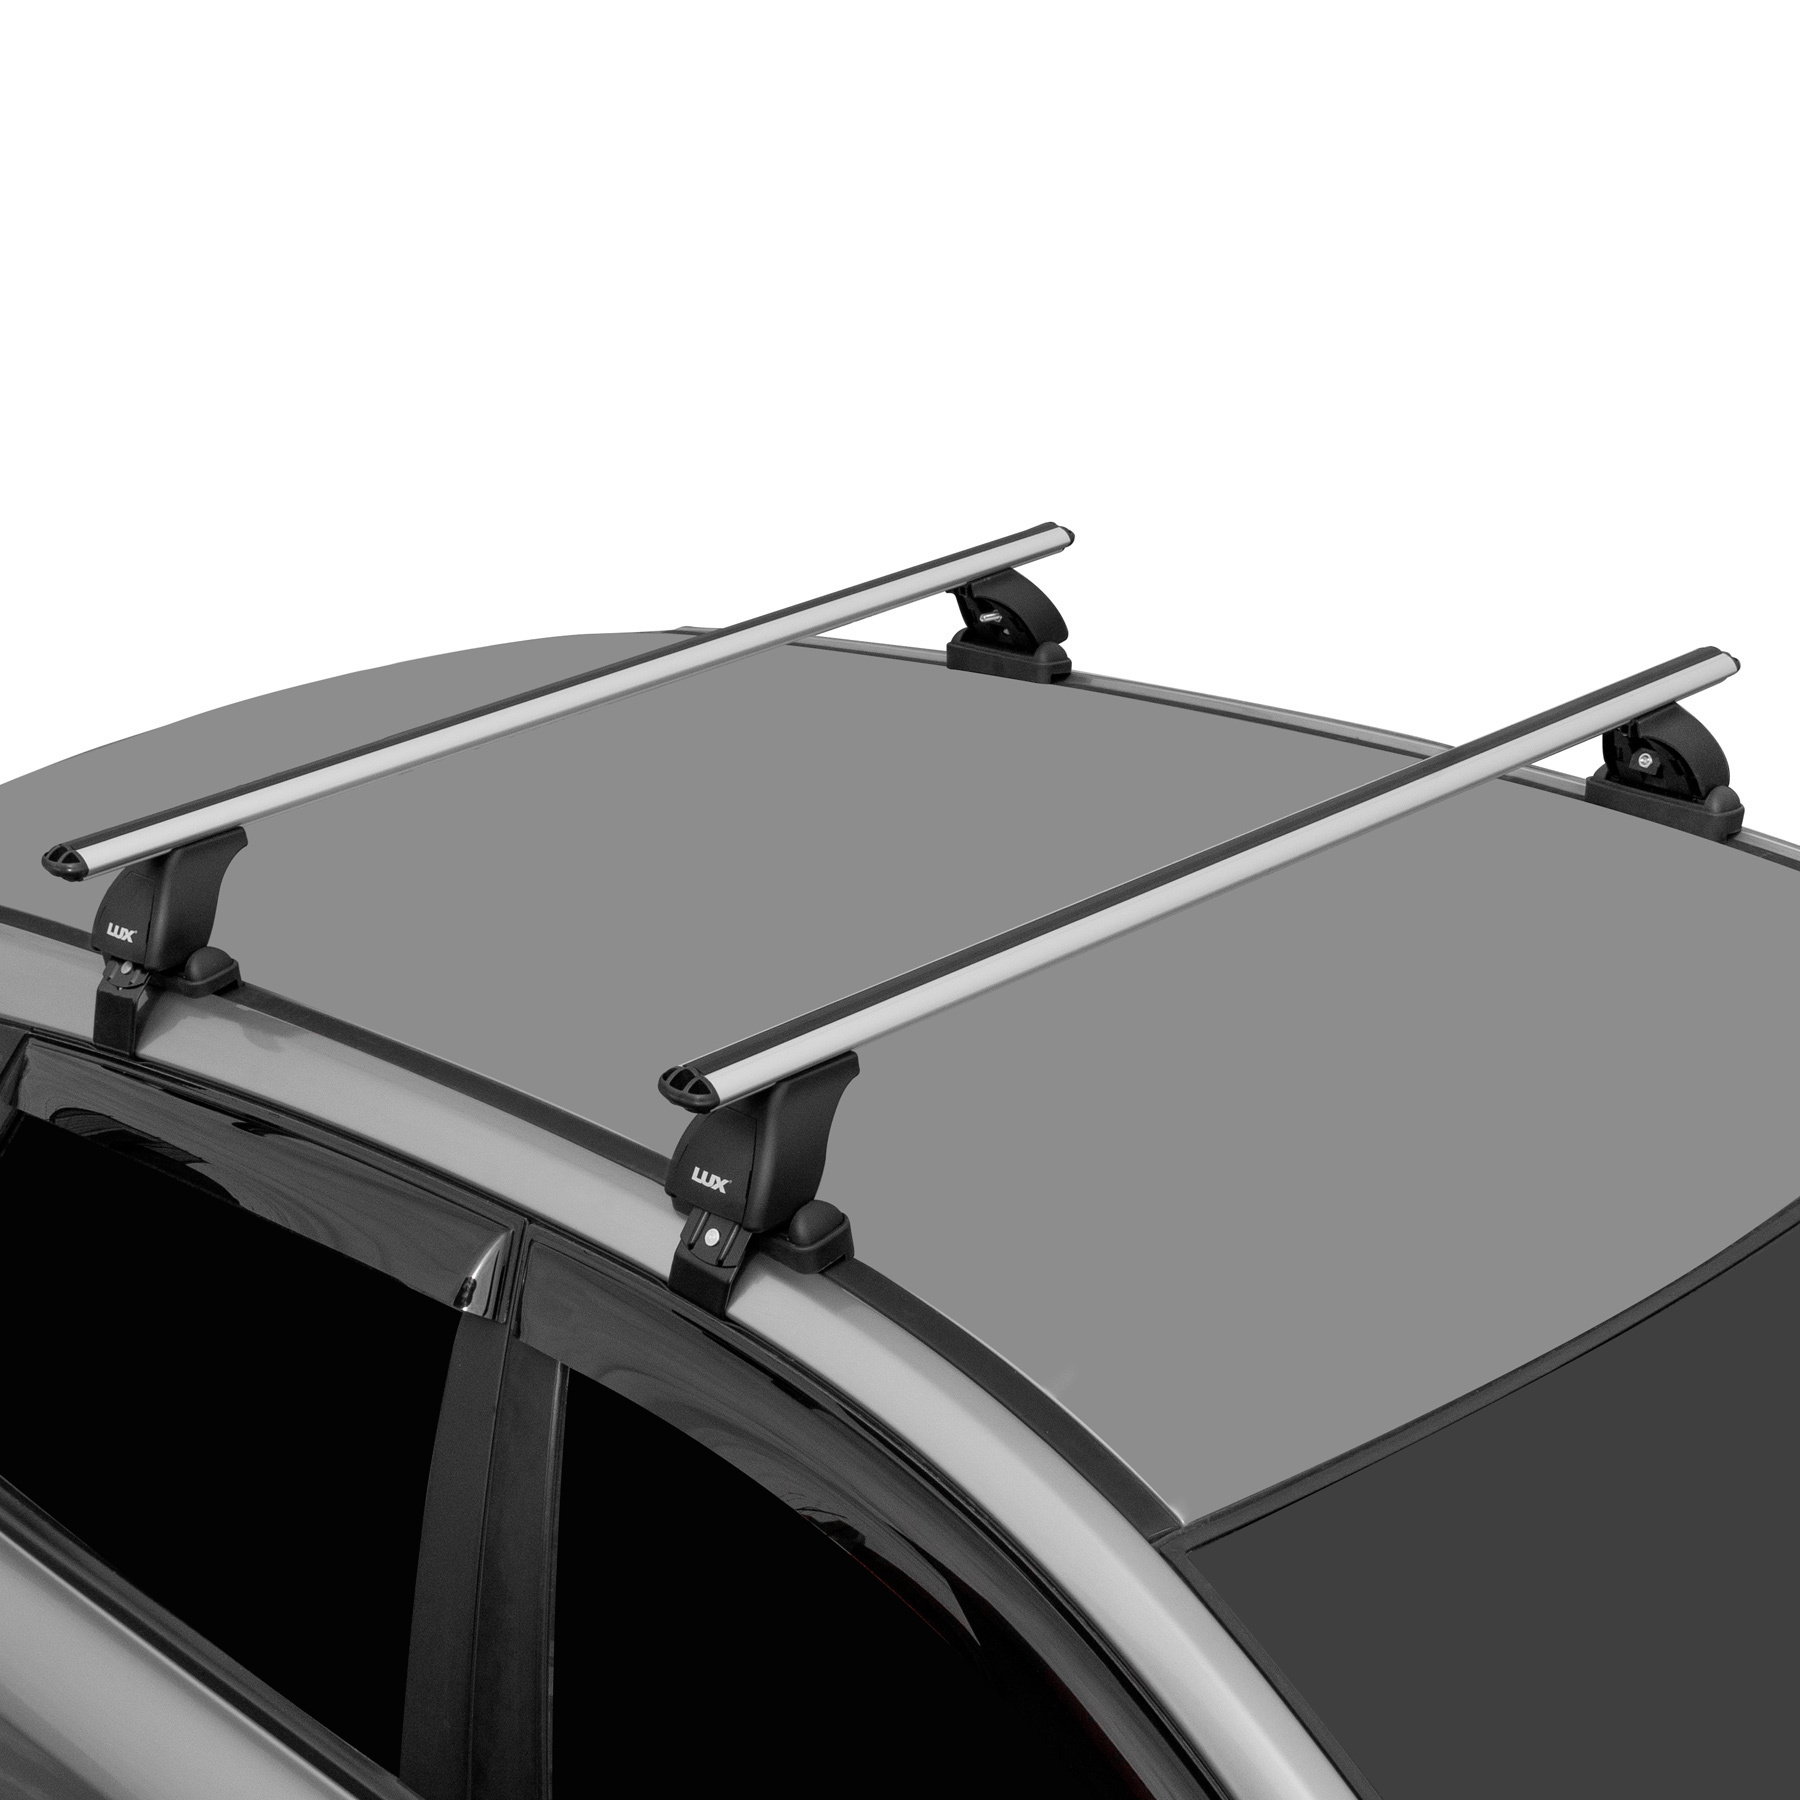 Багажники на крышу автомобиля Lada Kalina - купить в Вашем городе